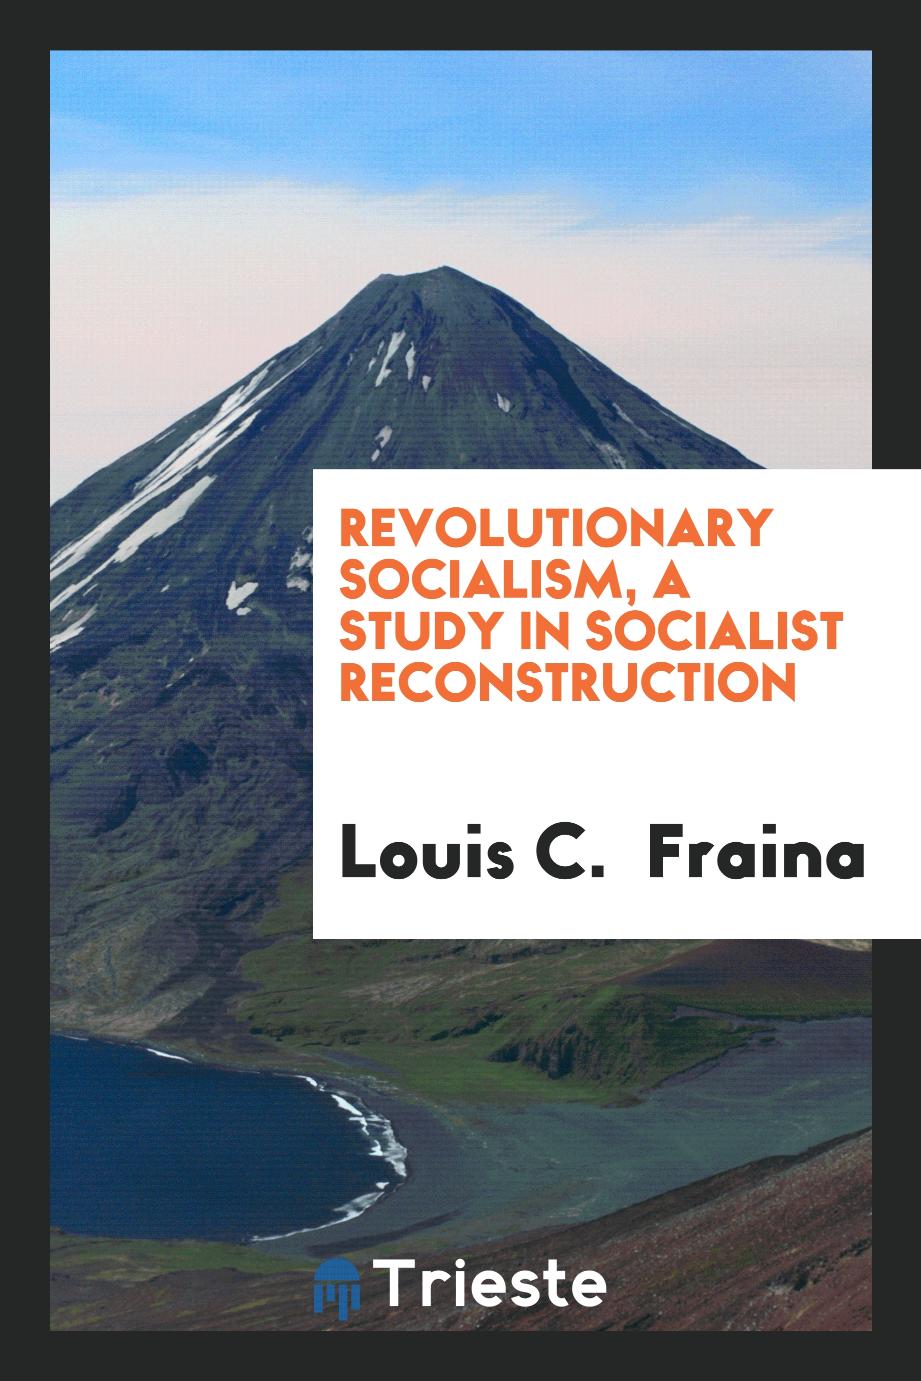 Revolutionary socialism, a study in socialist reconstruction